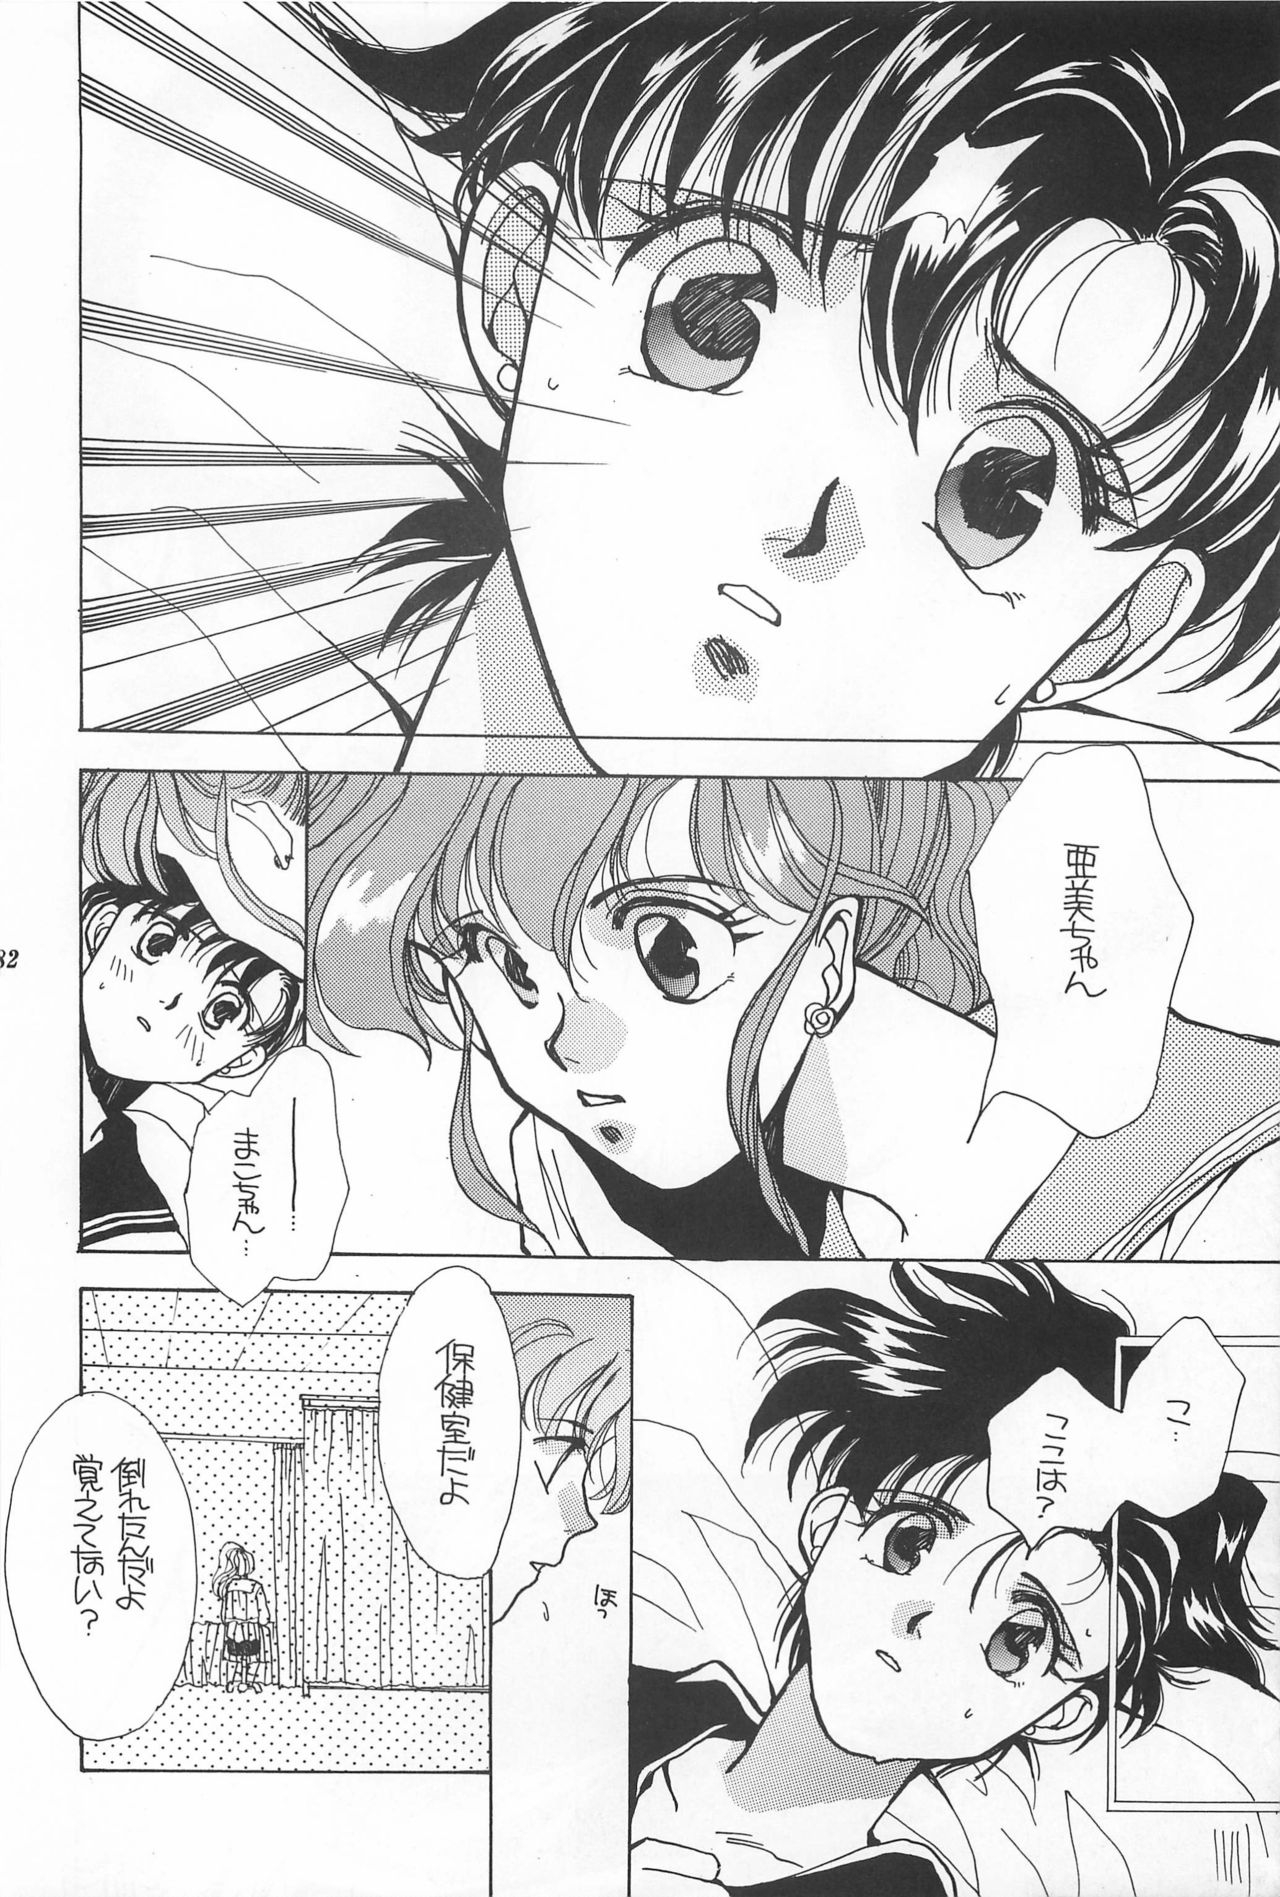 [Hello World (Muttri Moony)] Kaze no You ni Yume no You ni - Sailor Moon Collection (Sailor Moon) 181